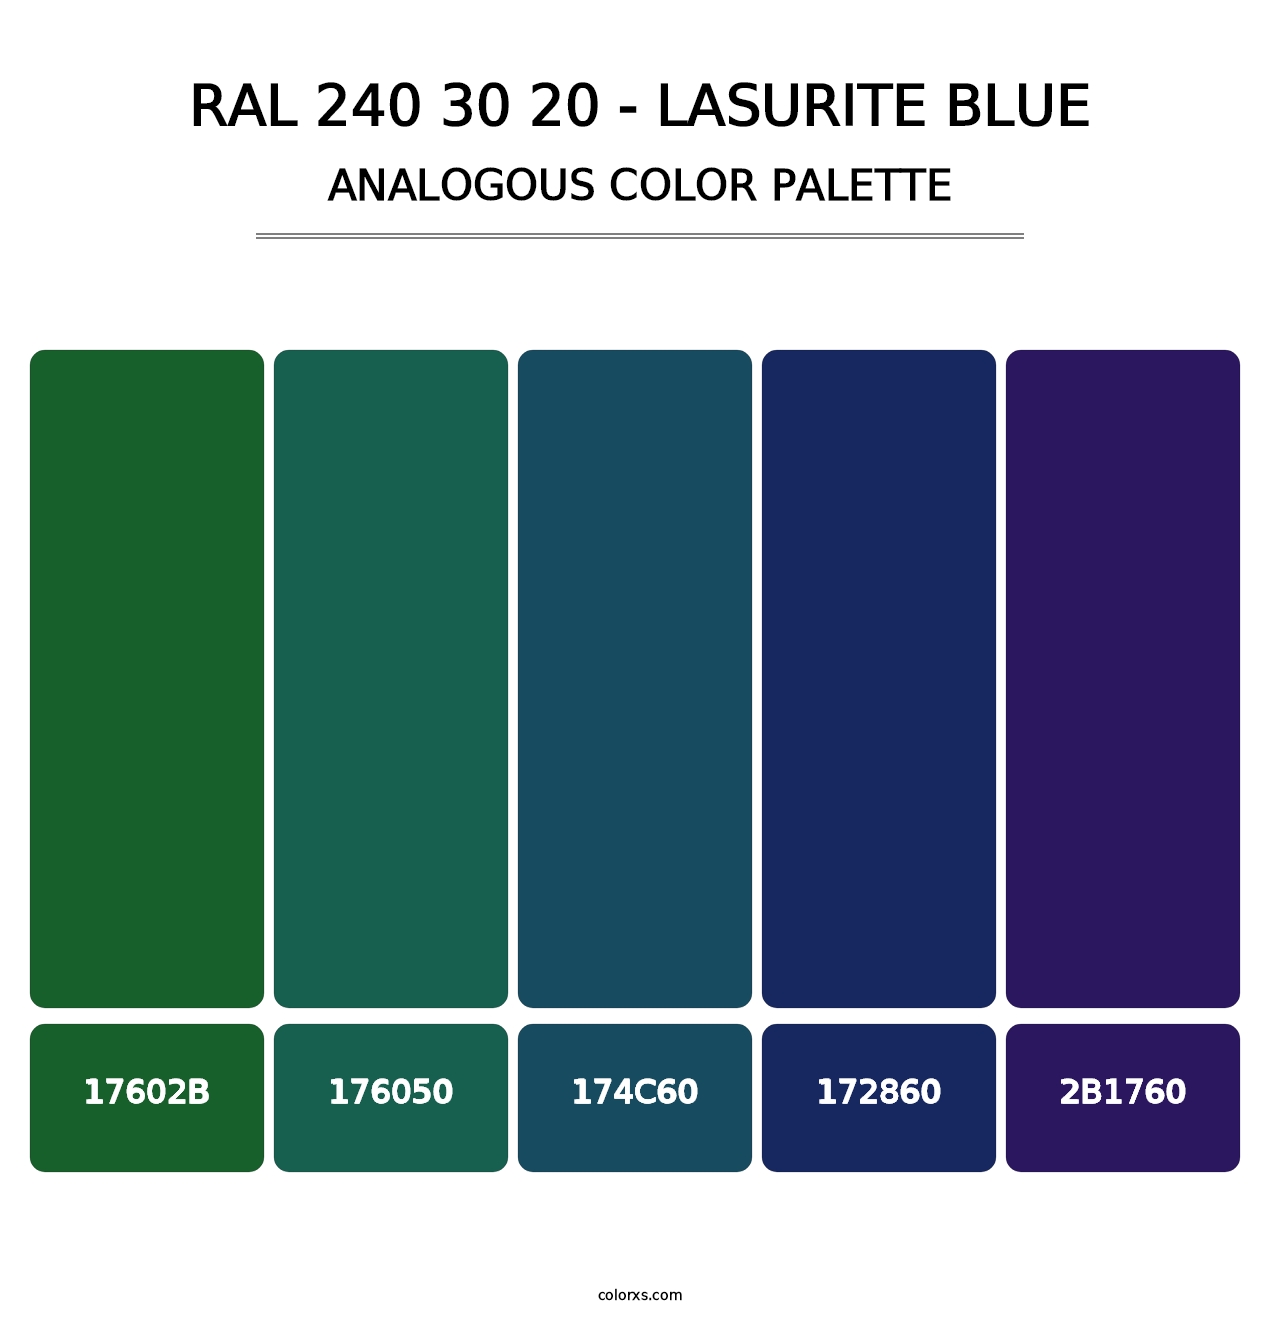 RAL 240 30 20 - Lasurite Blue - Analogous Color Palette